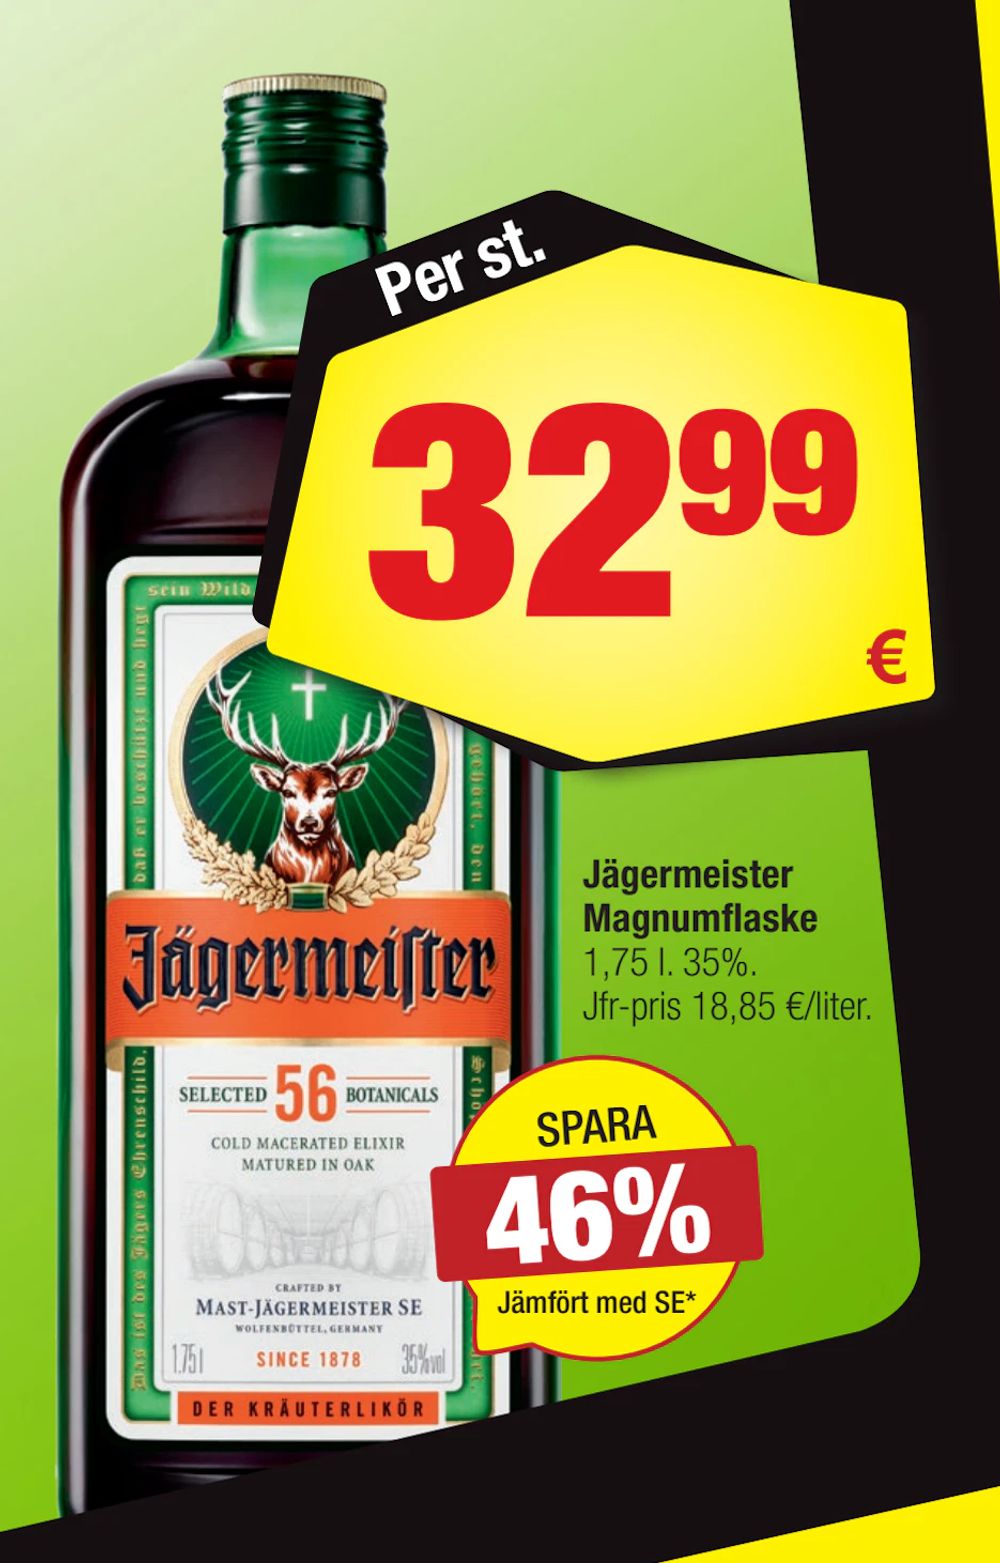 Erbjudanden på Jägermeister Magnumflaske från Calle för 32,99 €